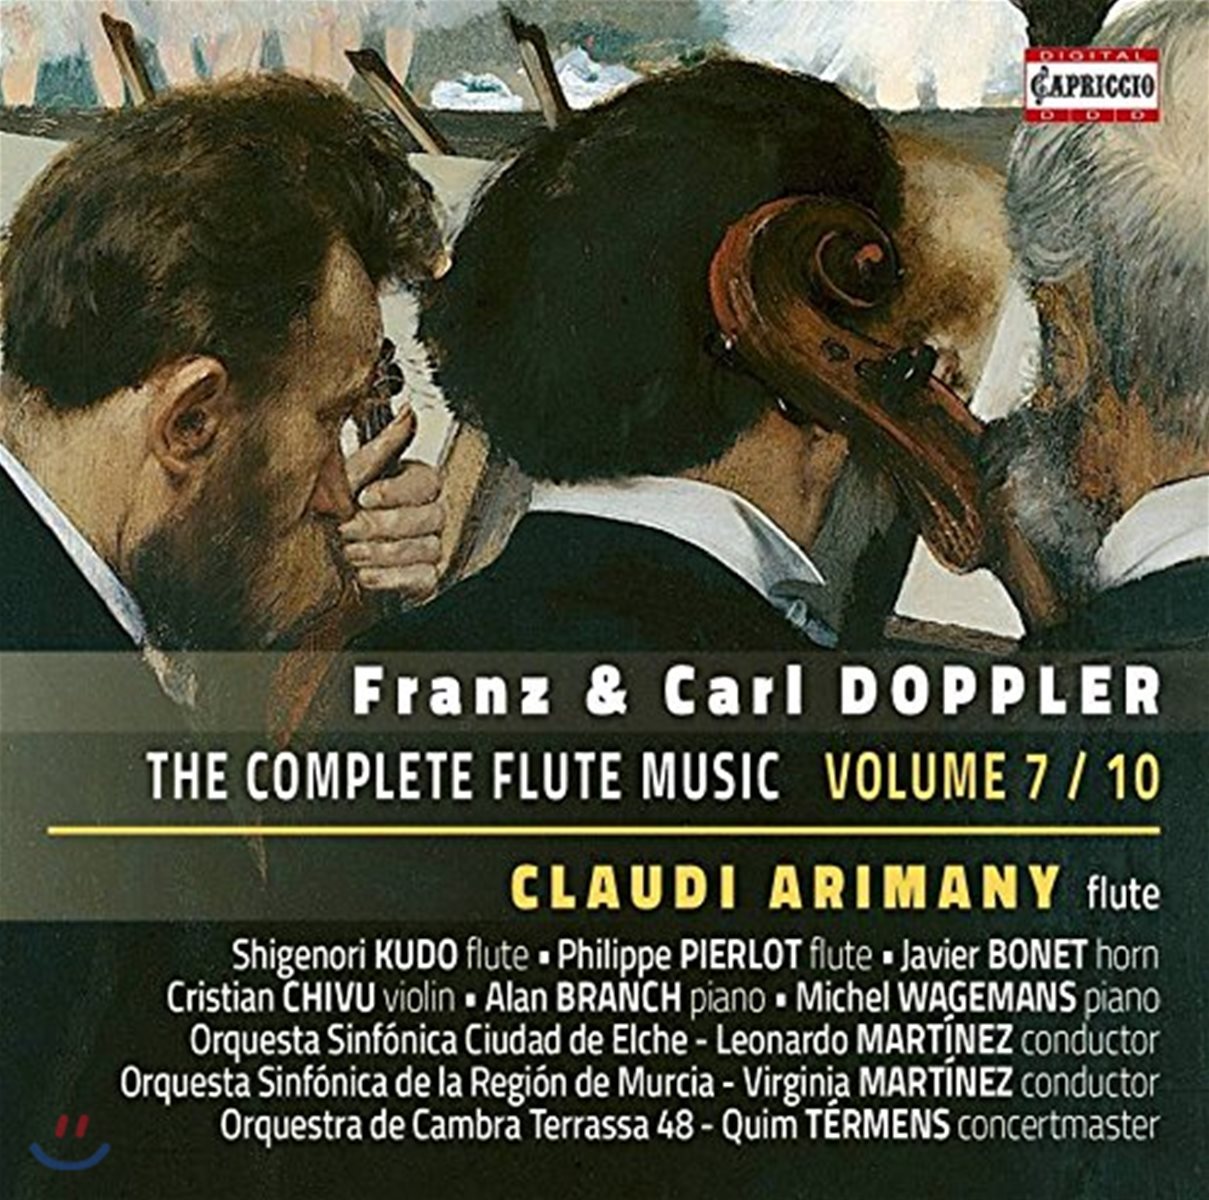 프란츠 & 칼 도플러: 플루트 음악 전곡 7집  (Franz & Carl Doppler: The Complete Flute Music Vol.7 / 10)